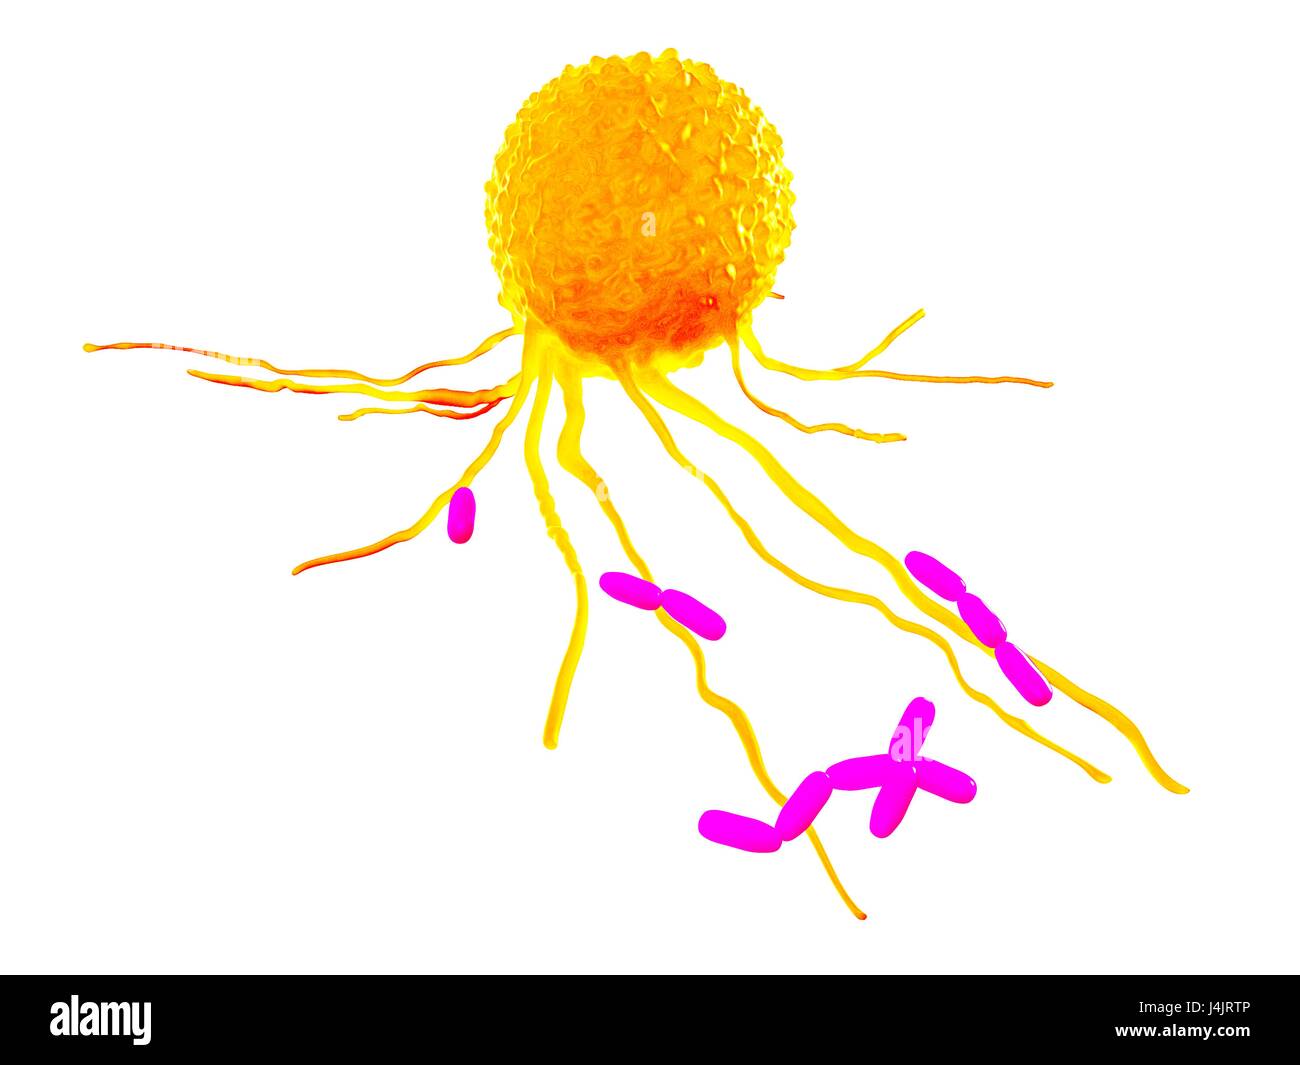 Leucocyte, illustration. Stock Photo